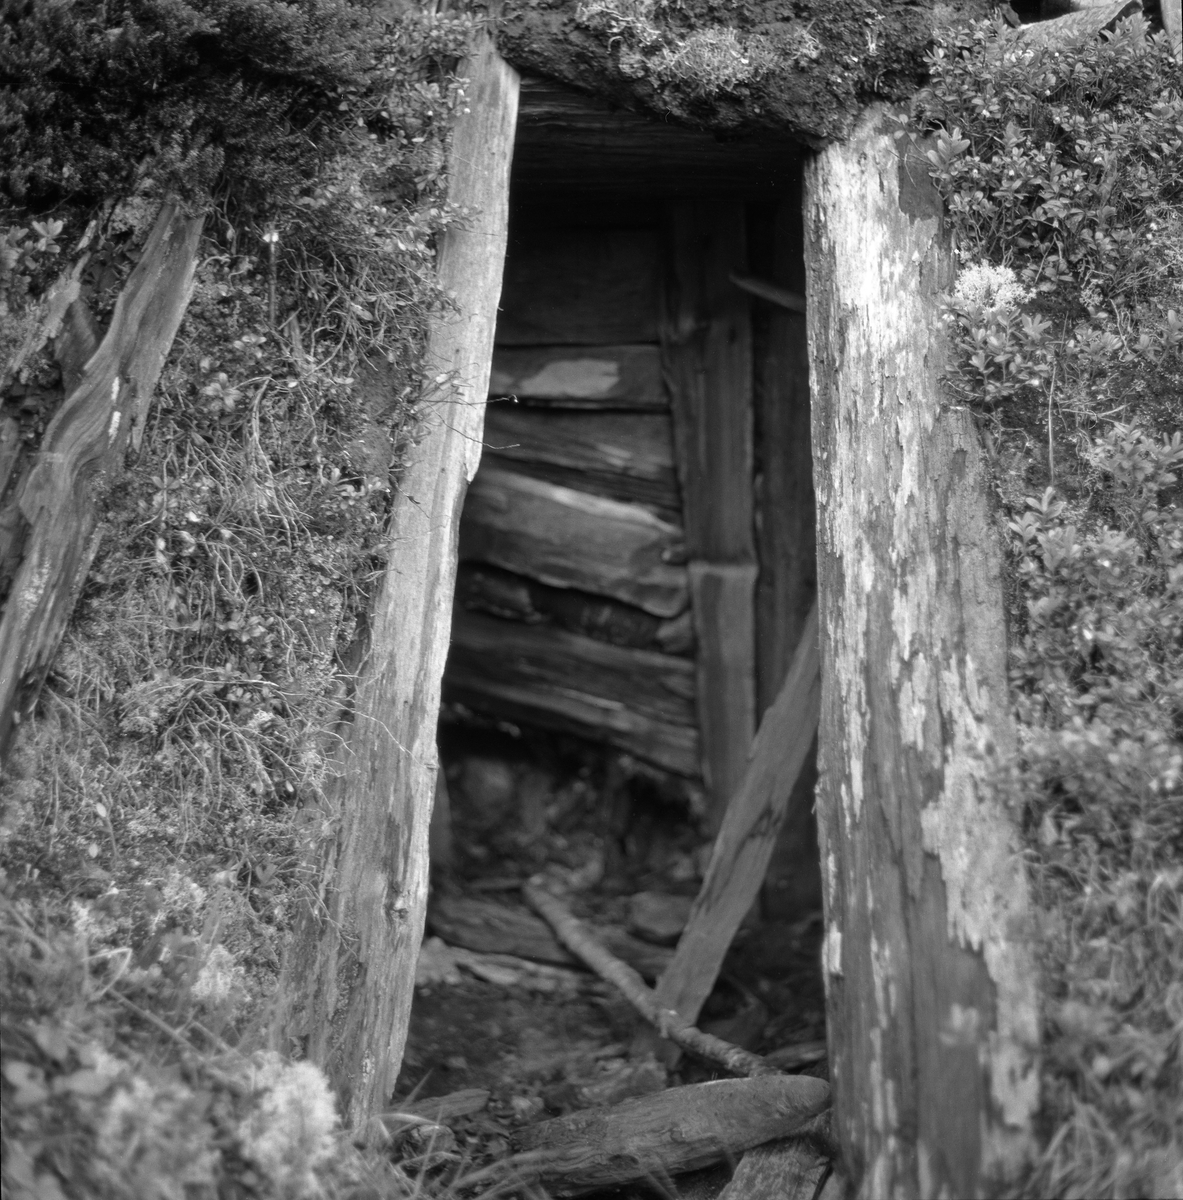 Gammel, falleferdig kjøyte - jordkoie - i Drangedal i Telemark, fotografert i 1962. Fotografiet er tatt mot døråpningen. Inne i rommet aner vi hvordan veggen på motstående side, ved sida av ildstedet, var i ferd med å sige innover, antakelig på grunn av lekkasjer og råte. 

Kjøyta var en enkel koietype, nesten utelukkende bygd av materialer som fantes i skogen og så enkelt konstruert at skogsarbeidere uten bygningsteknisk kompetanse kunne få den ferdig på kort tid. Jørund Midttun (1887-1969), som kom til Telemark som ung forstkandidat i 1914 og ble en sentral skikkelse i skogbruket der gjennom hele sin yrkeskarriere, beskrev dette slik: 

«Framgangsmåten med oppsettinga var gjerne slik at når tre-fire hoggarar hadde teke hogst saman eller nær kvarandre, drog dei til skogs frå morgonen av, og dei rakk då å setta opp ei slik kjøyte på ettermiddagen.

Kjøyta var bygd av «props». Det var smale stokkar som vart reist opp på ei rund eller firkanta tuft nedantil. Oppe gjekk stokkane saman i topp, og kjøyta vart som eit spisstelt å sjå til. … Det var heller ikkje uvanleg at kjøyta vart sjåandes ut som ein avslutta pyramide. Slik er den Skogbruksmuseet har på Prestøya [SJF-B.0009] …

For å gjera kjøytene tette og varme, la dei granbork eller bjørkenever utanpå stokkane og deretter kom eit tjukt lag av torv eller jord. Ofte vart det på toppen og noko nedetter lagt ei hette av bork eller never. Til dør bruka dei ein lem av kløyvde bord eller skier. Denne vart passa inn i ein karm skrådd med hyttetaket og kunne berre opnast utetter. Ved sida av døra vart det på utsida av taket (veggen) mura ein peis. Sjølve grua var inne i kjøyta, men elles sjekk skorsteinen opp utanfor. Sengene (benk-brisk) gjorde dei vanlegvis også av smått rundvirke, litt opp frå bakken, slik at dei vart liggande med føtene mot døråpning og gruve.

Desse kjøytene var gode og varme, og her budde så vel bonden sjølv som folka hans på virkedagane når hogsten gjekk.»

Midttun skrev videre at «Slike kjøyter var vanlege over store luter av Telemark heilt fram til 1920-åra.» At det ble slutt med kjøytebygginga på denne tida hadde sannsynligvis samanheng med at Stortinget i 1915 vedtok en lov om husvær for folk og hester under skogsarbeid og fløting, som skulle følges opp med lokale vedtekter. Året etter fulgte herredsstyret i Drangedal opp med regler som poengterte at skogshusvær skulle være «tilstrækkelig rummelig i forhold til arbeidernes antal», og at de skulle være «forsynt med tætte, gode gulv og vægger, godt, drypfrit tak, god og tæt dør og vindu, hylder og sovebrisk, anbragt mindst 40 cm. over gulvet, peis, enten alene eller i forbindelse med ovn …». Sjøl om Midttun, sikkert med rette, hevdet at kjøytene var gode og varme, var det flere av de andre kravene i de nevnte vedtektene kjøytene ikke tilfredsstilte.